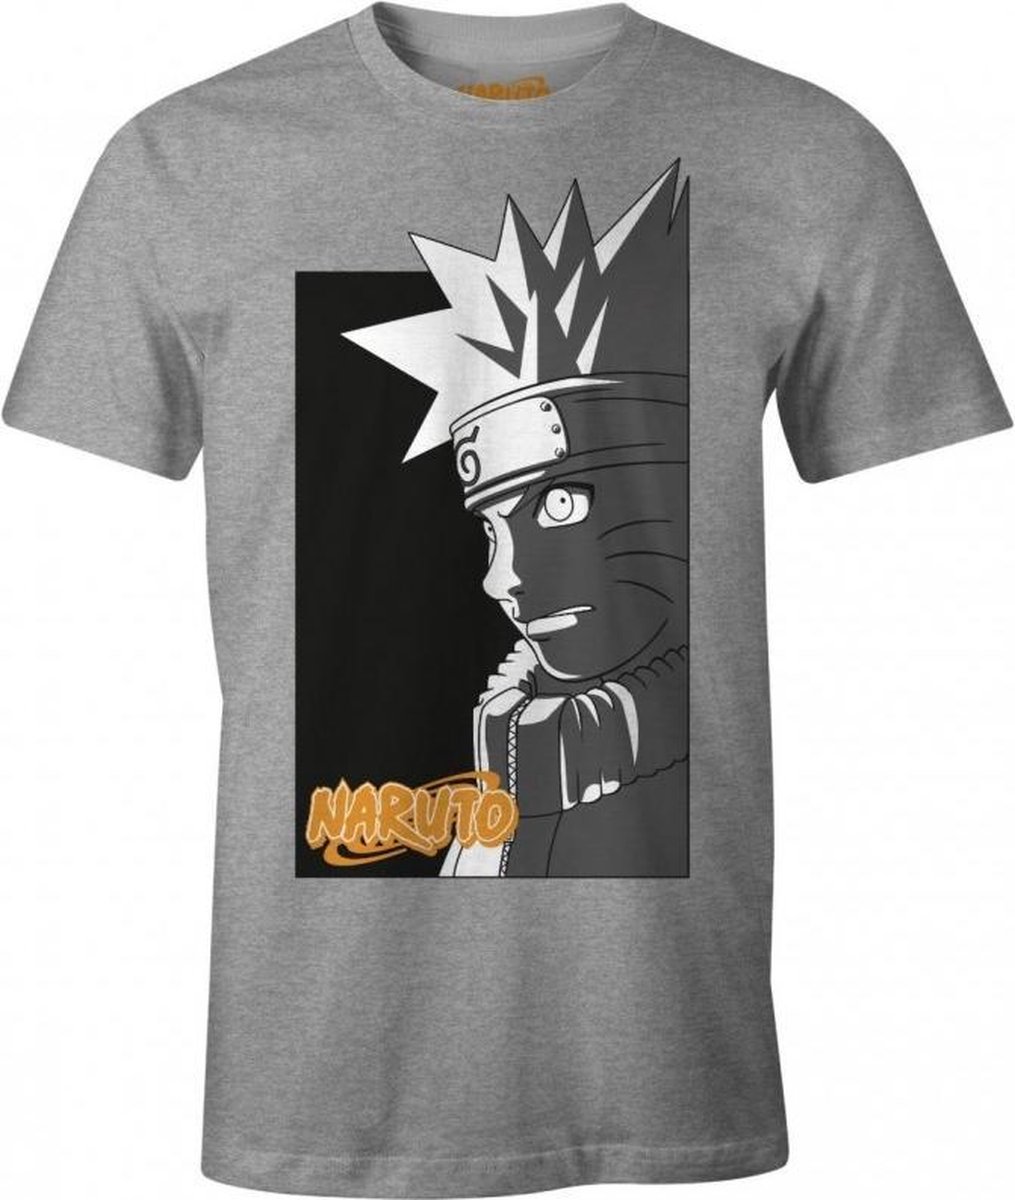 Naruto - Naruto's Shadow - Anthra Mel Men's T-Shirt - L